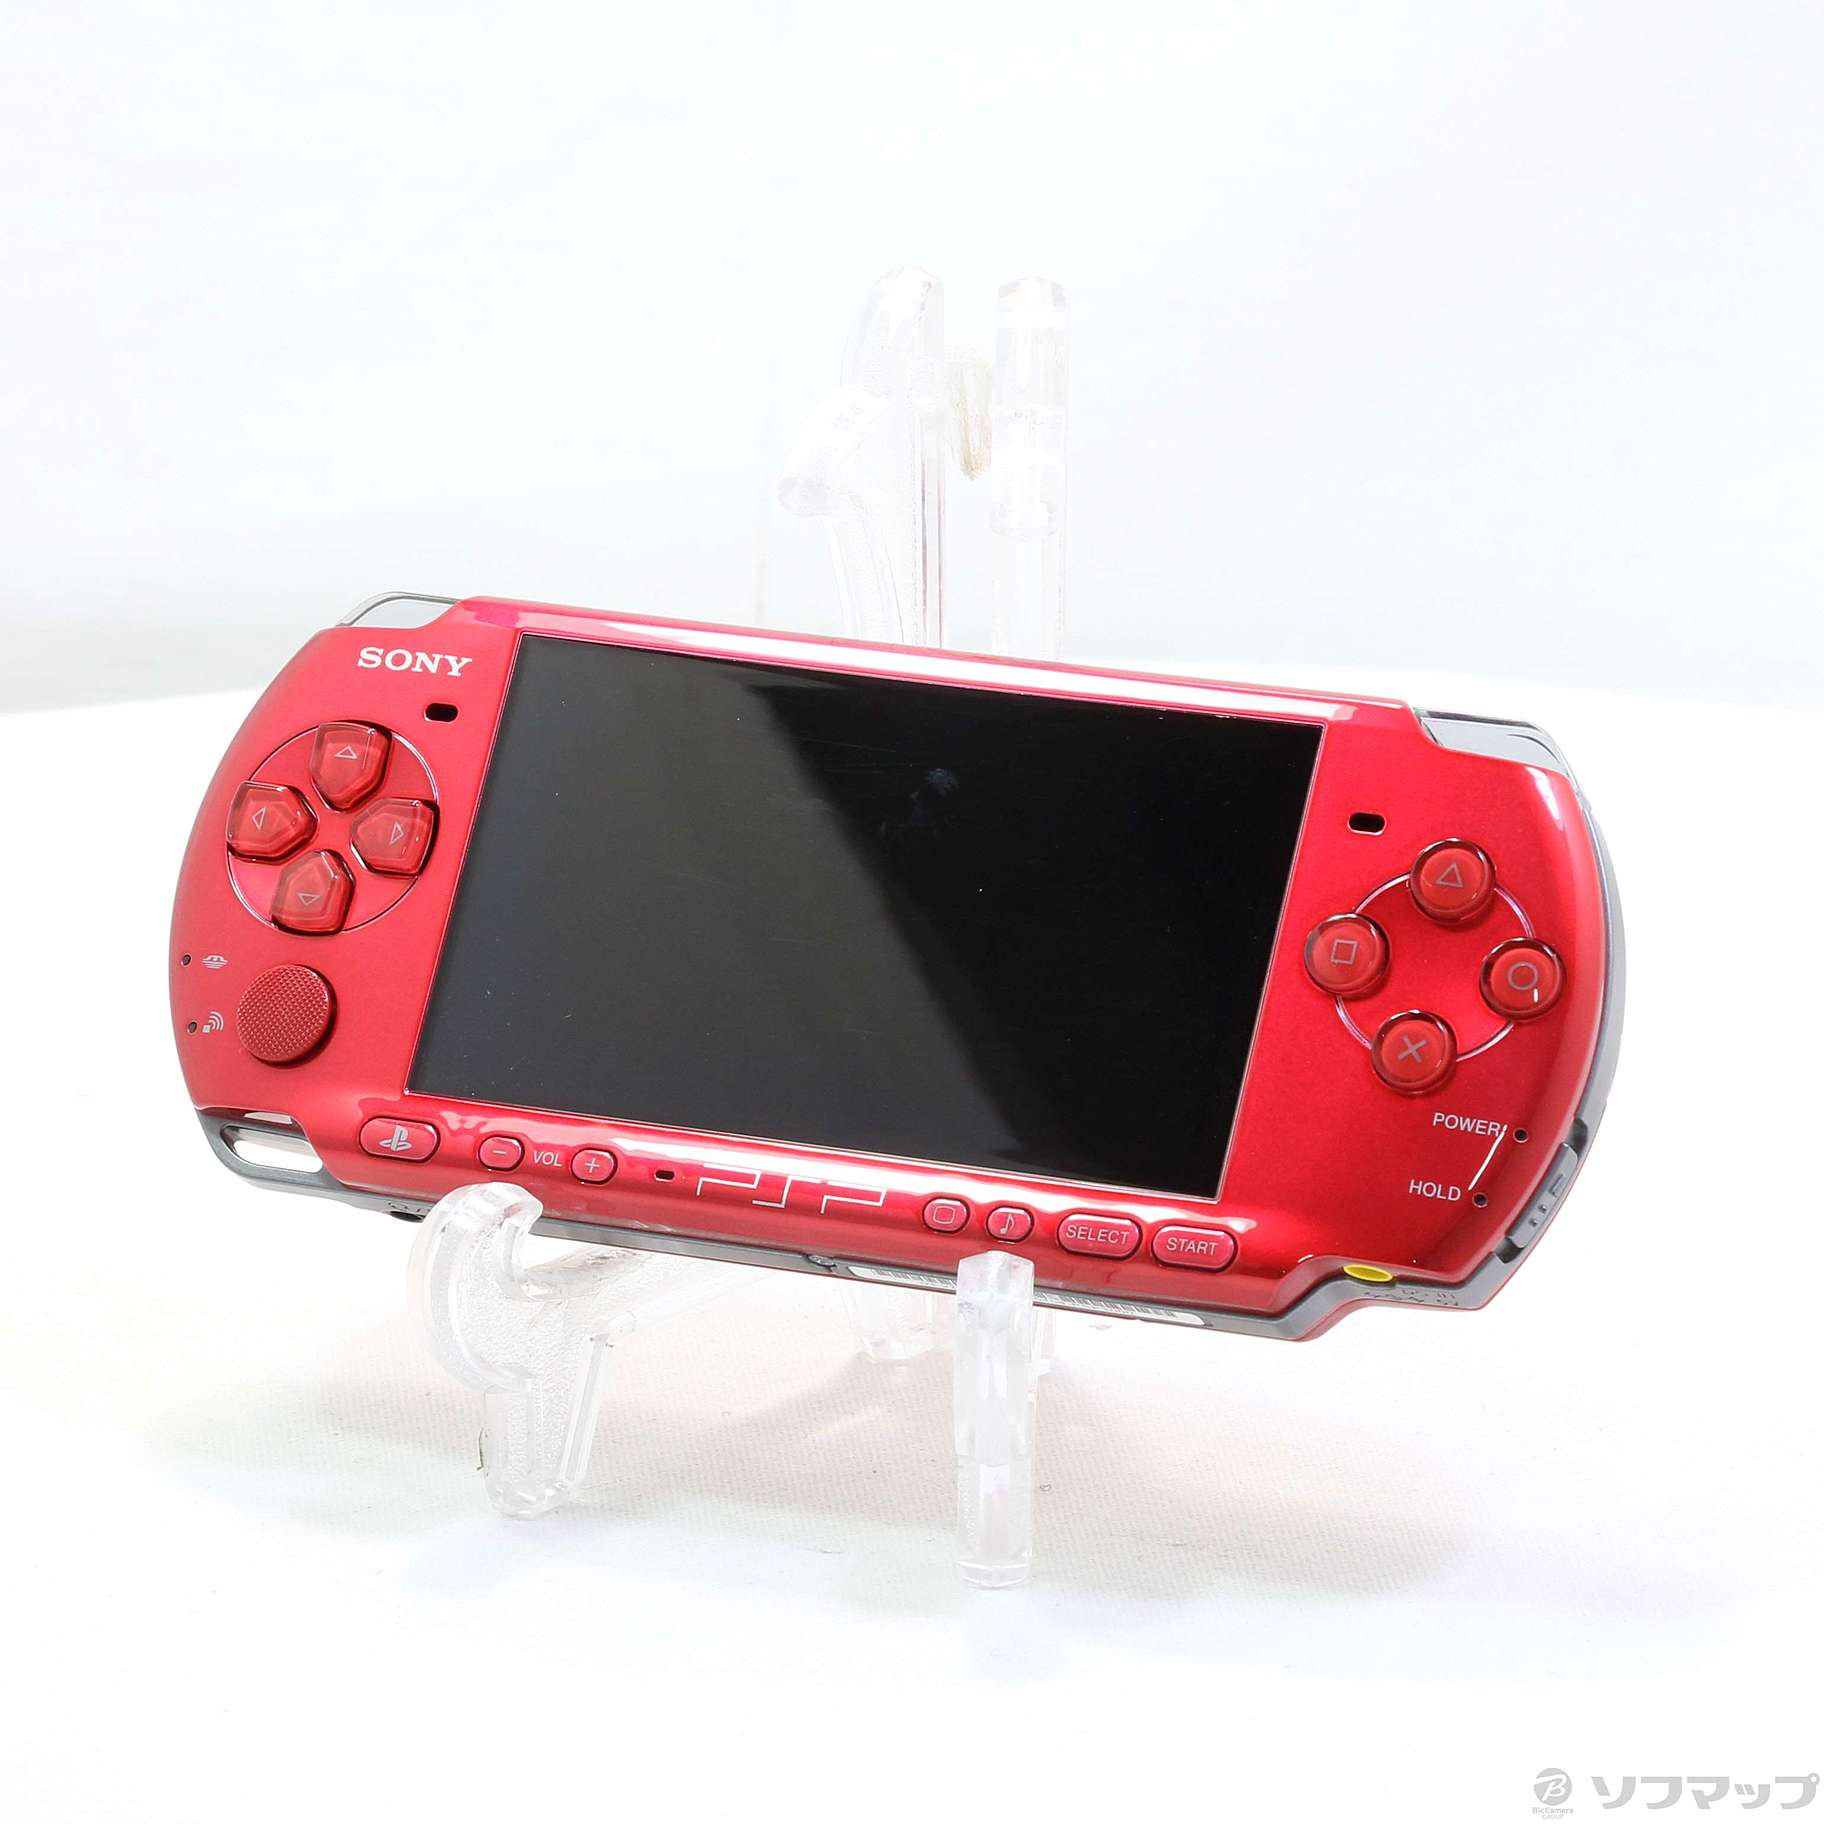 258【美品】PSP3000 ラディアントレッド 本体 PSP-3000RR - 携帯用